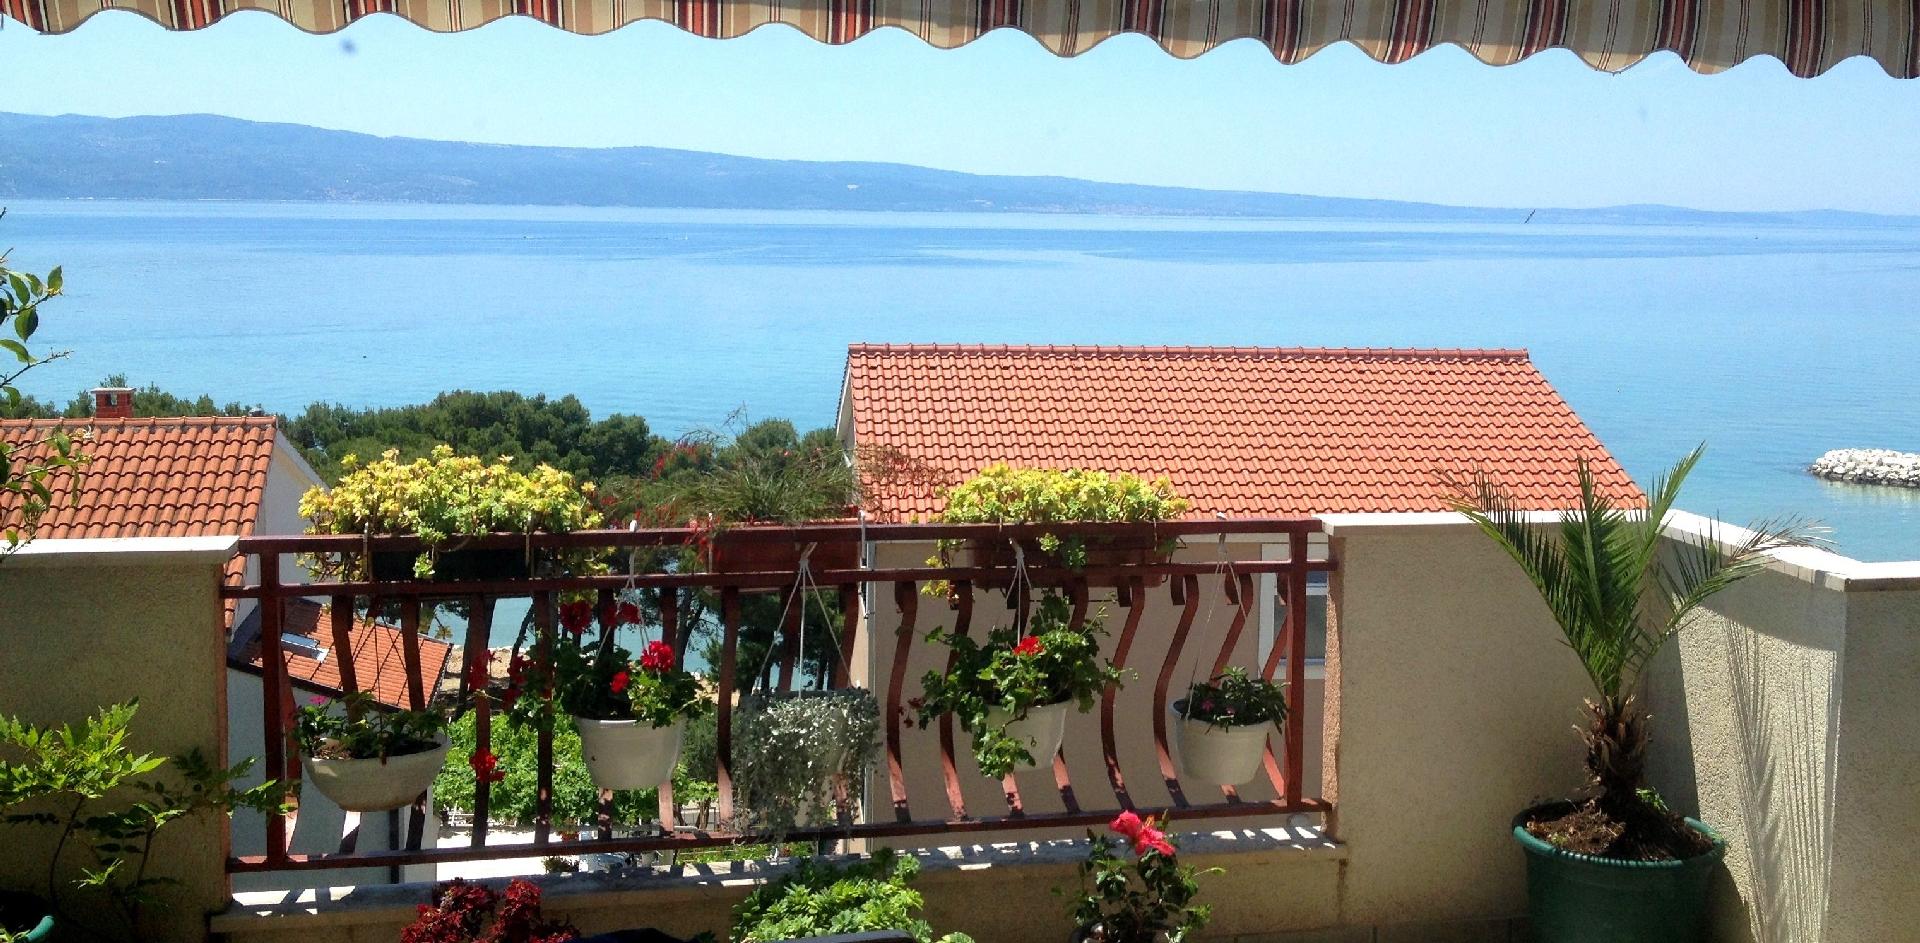 Geräumige Wohnung in Du?e mit Eigenem Balkon  Ferienwohnung in Dalmatien